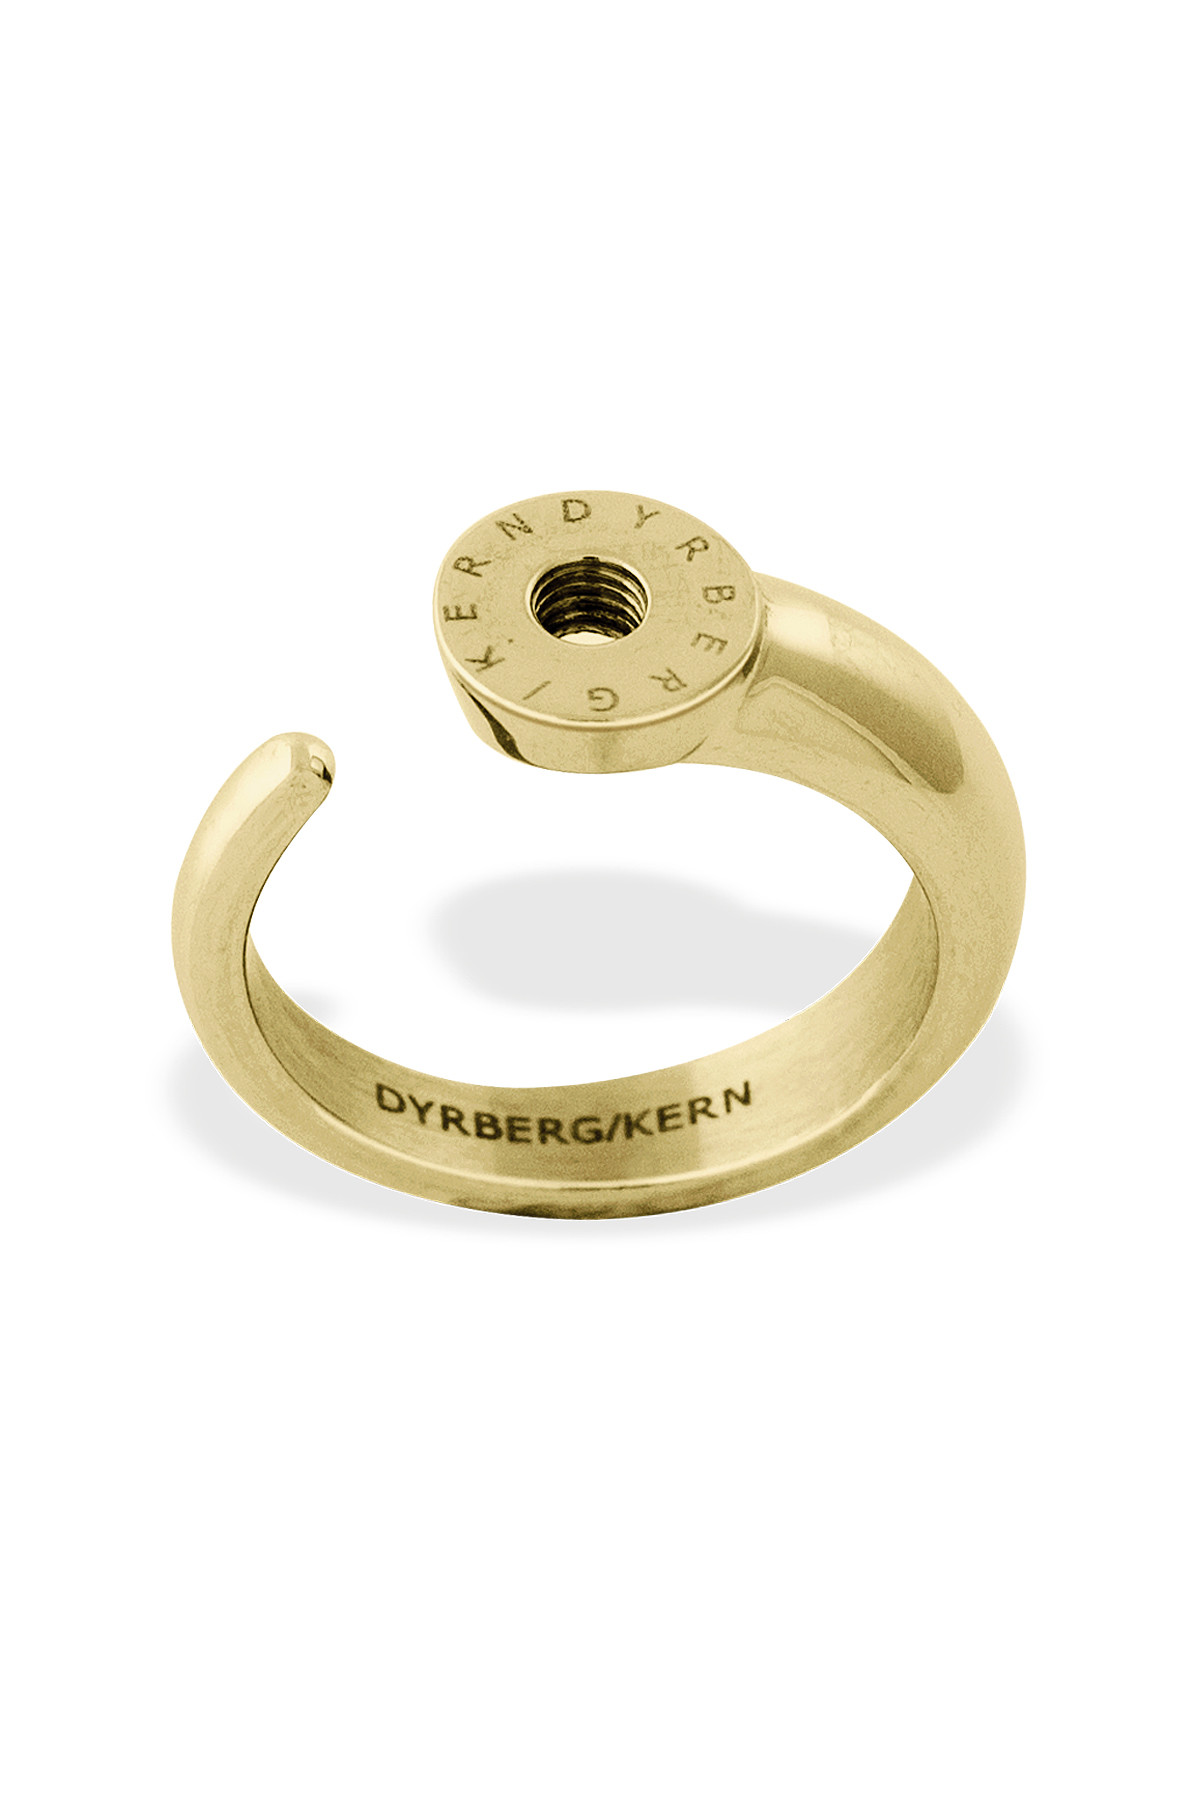 Billede af Dyrberg/Kern Ring Ring, Farve: Guld, Størrelse: I/51, Dame hos Dyrberg/Kern